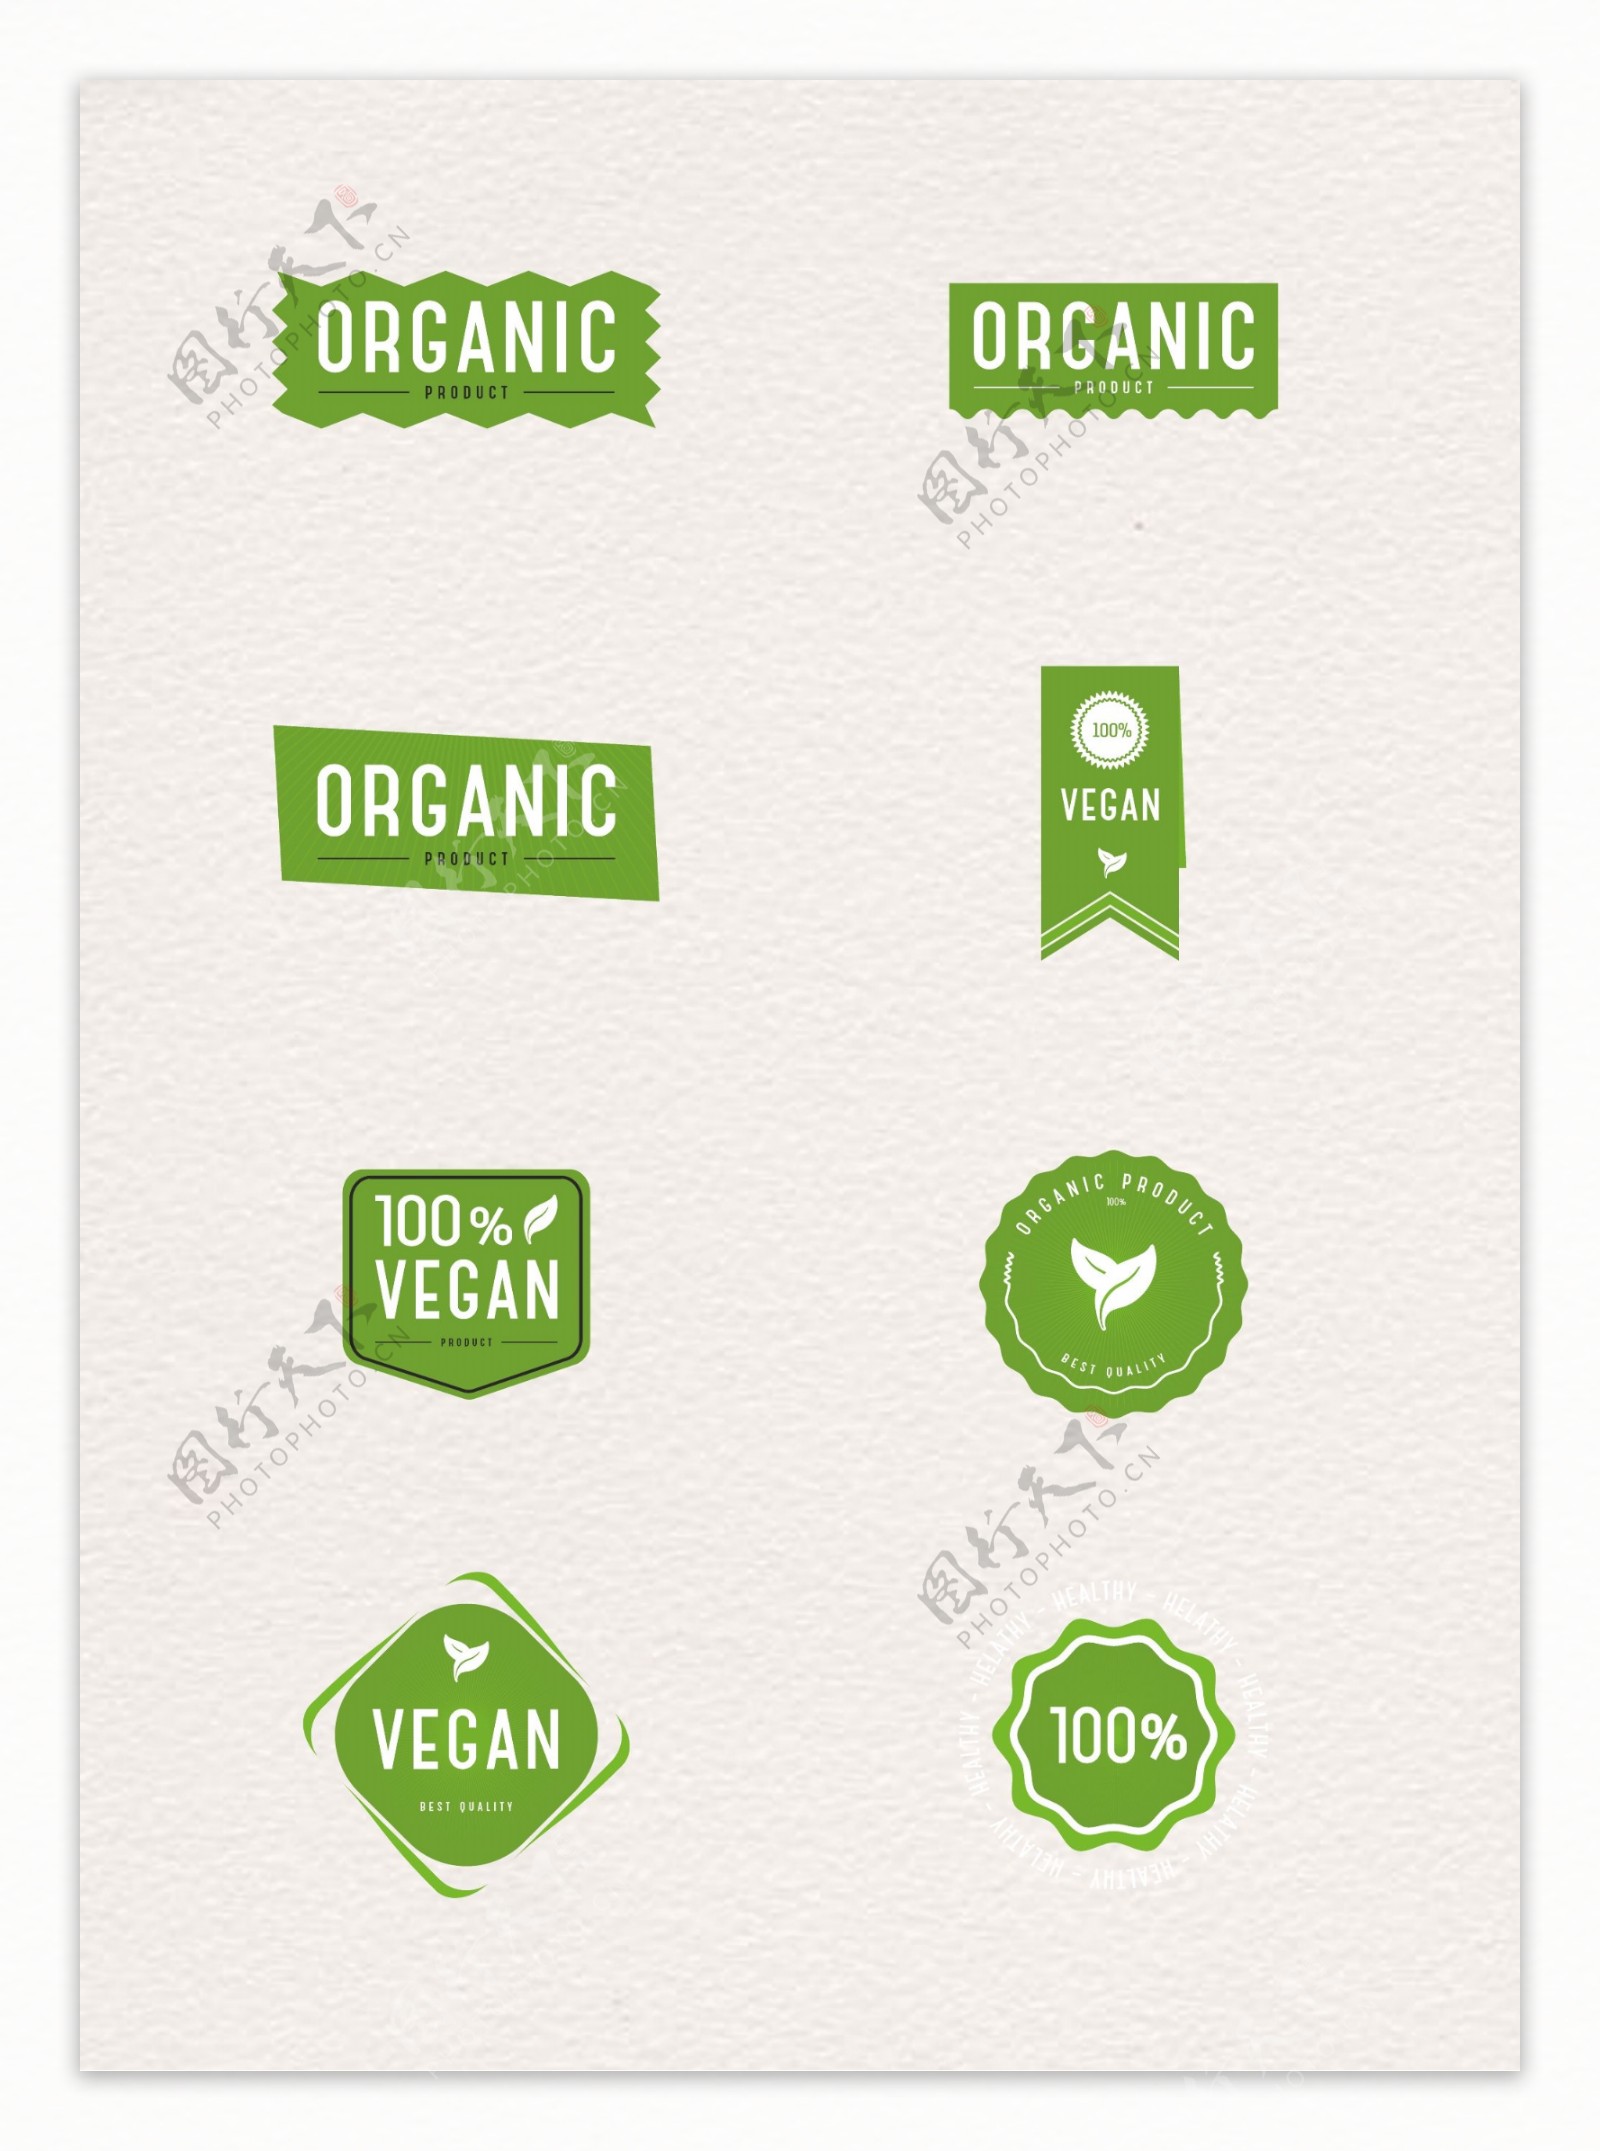 绿色有机物质和素食标签设计